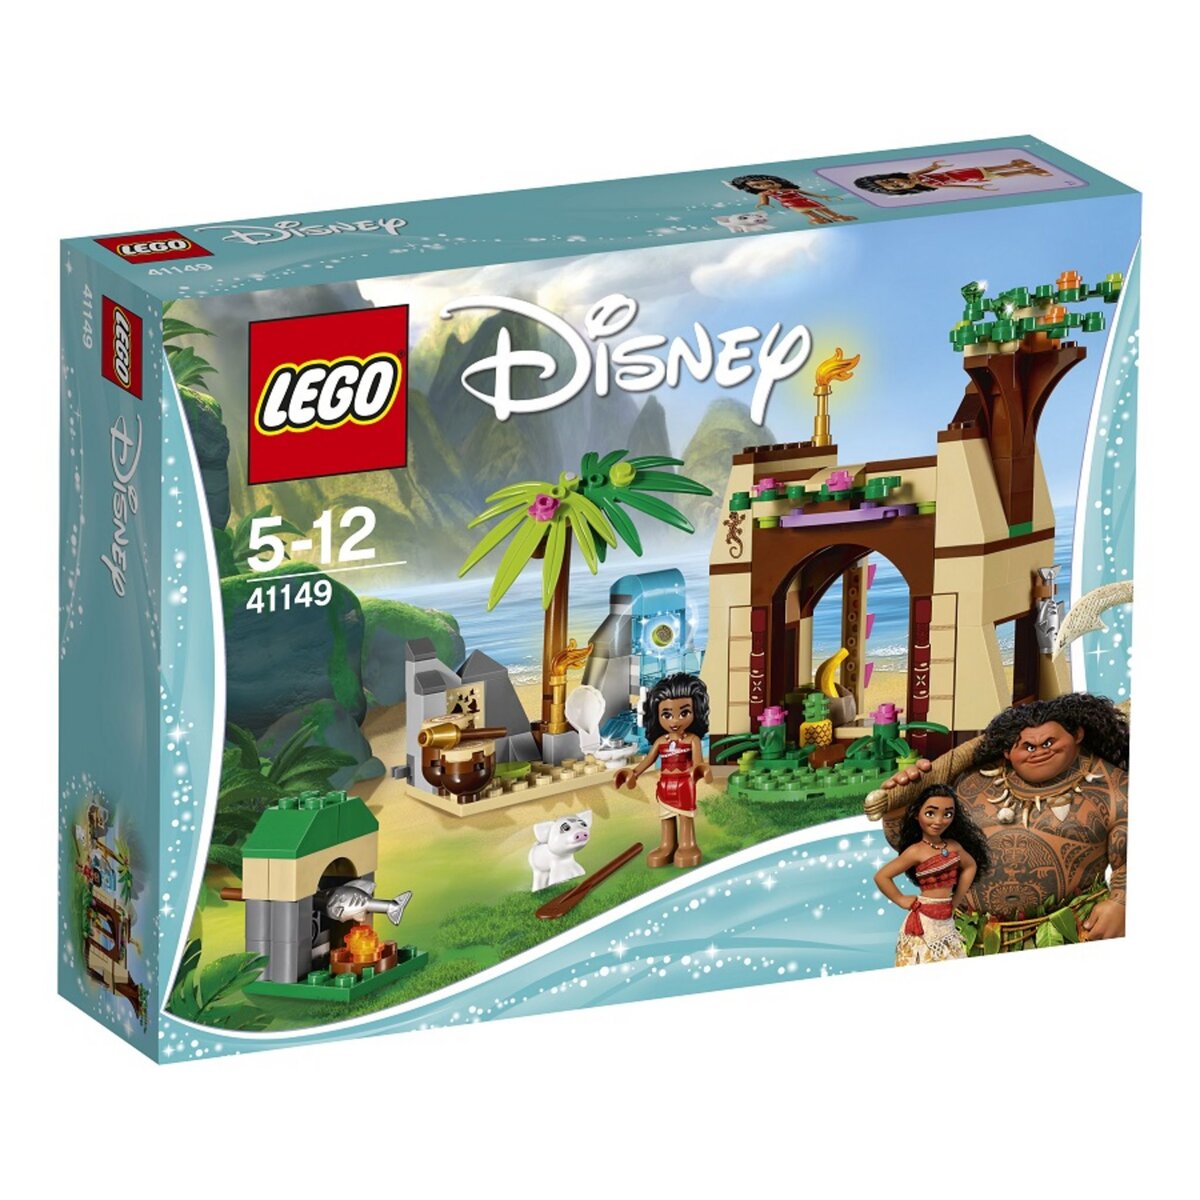 LEGO Duplo Disney princess 41149 - L'aventure sur l'île de Vaiana